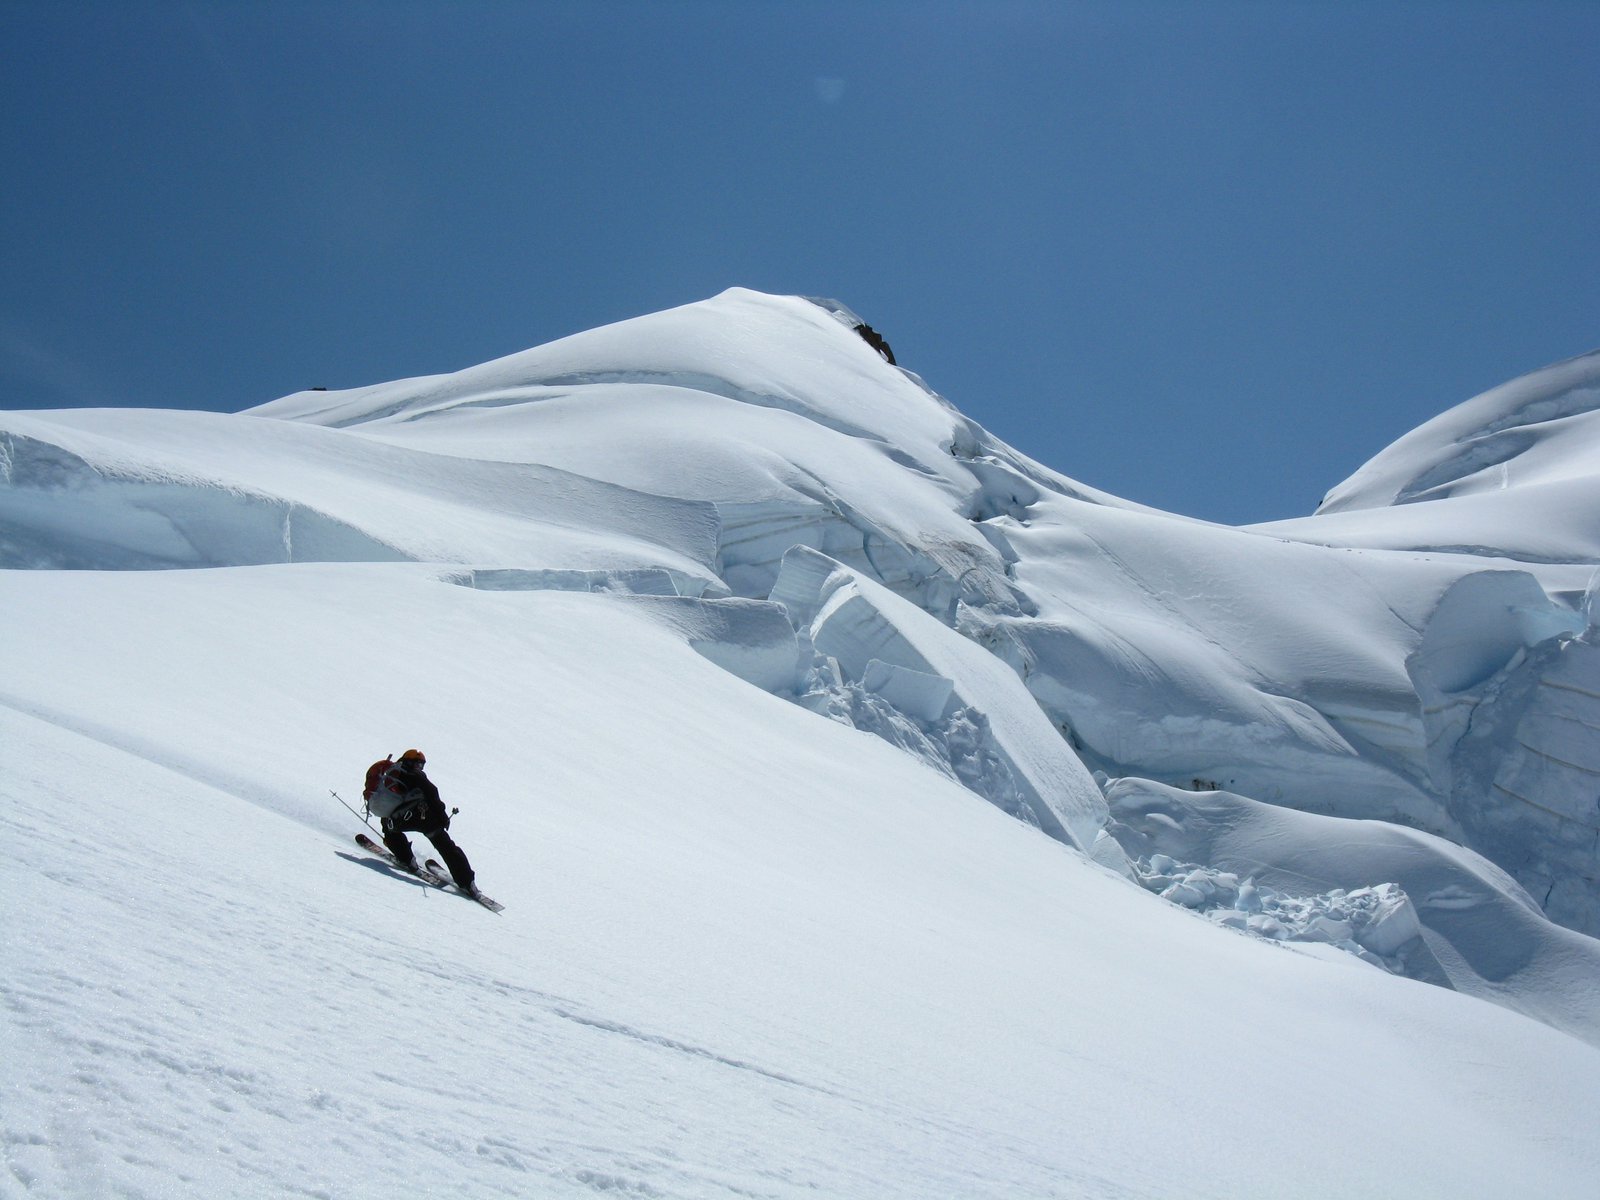 Contemporary Glacier skiing